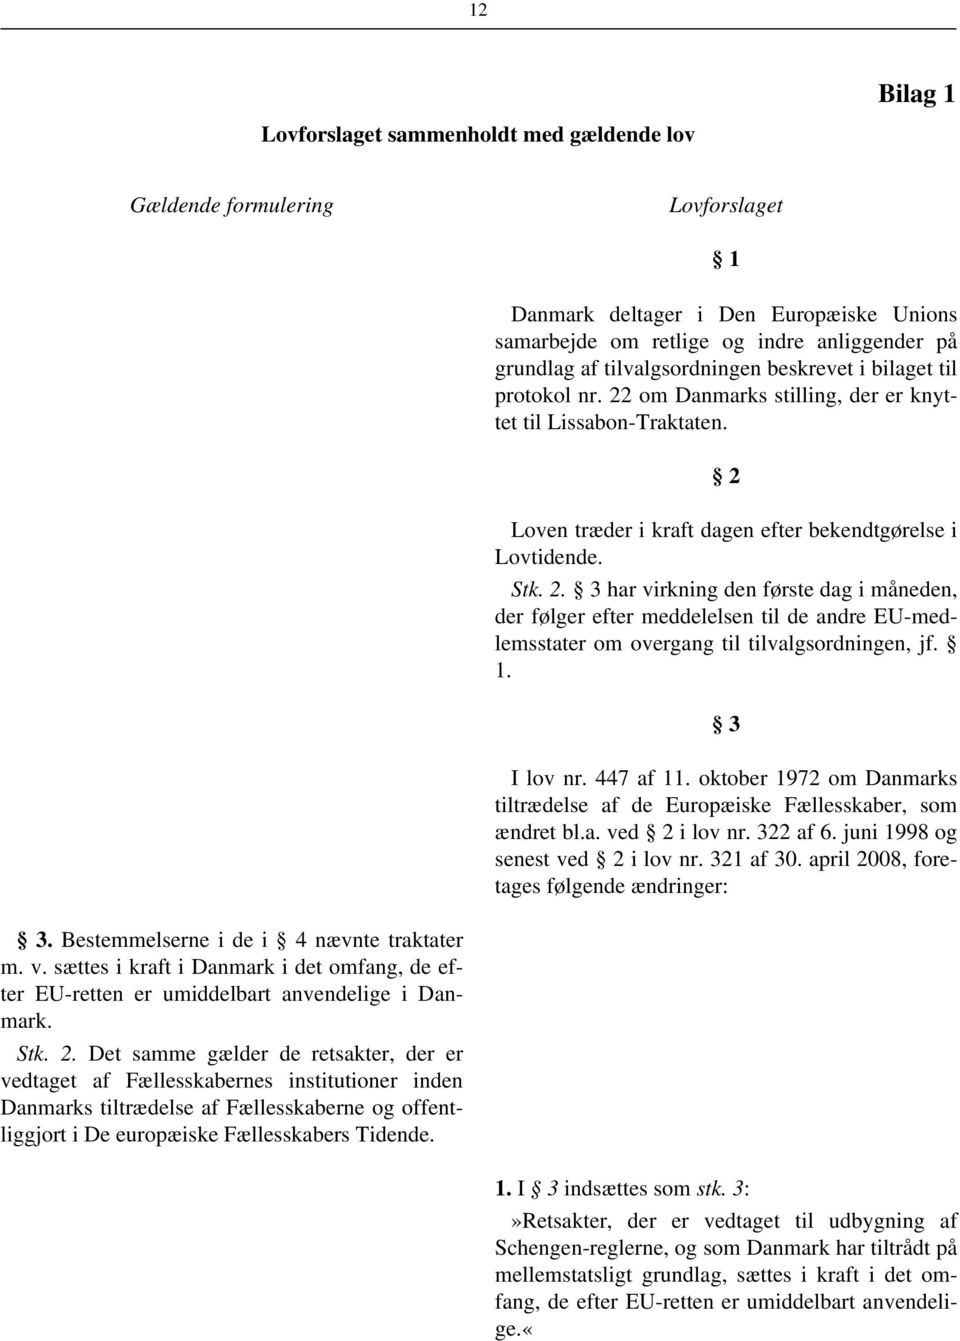 1. 3 I lov nr. 447 af 11. oktober 1972 om Danmarks tiltrædelse af de Europæiske Fællesskaber, som ændret bl.a. ved 2 i lov nr. 322 af 6. juni 1998 og senest ved 2 i lov nr. 321 af 30.